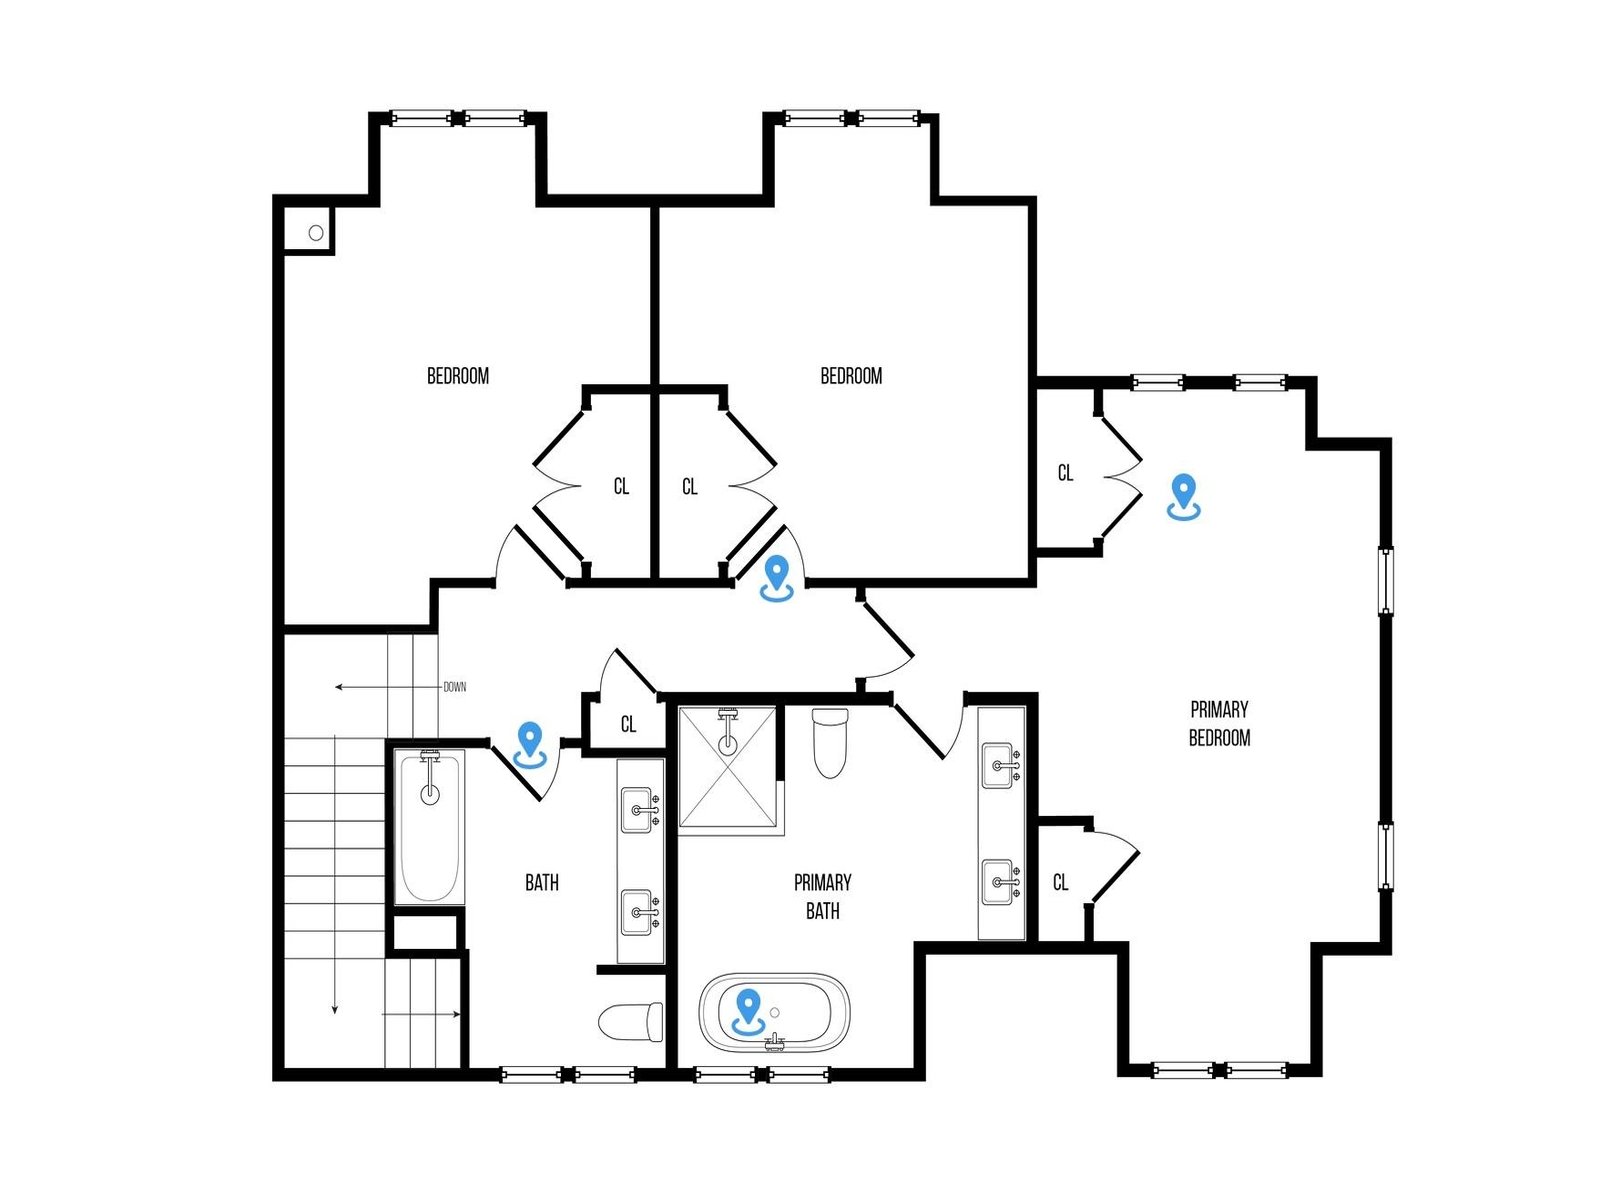 Upstairs Bedroom Floor Plan